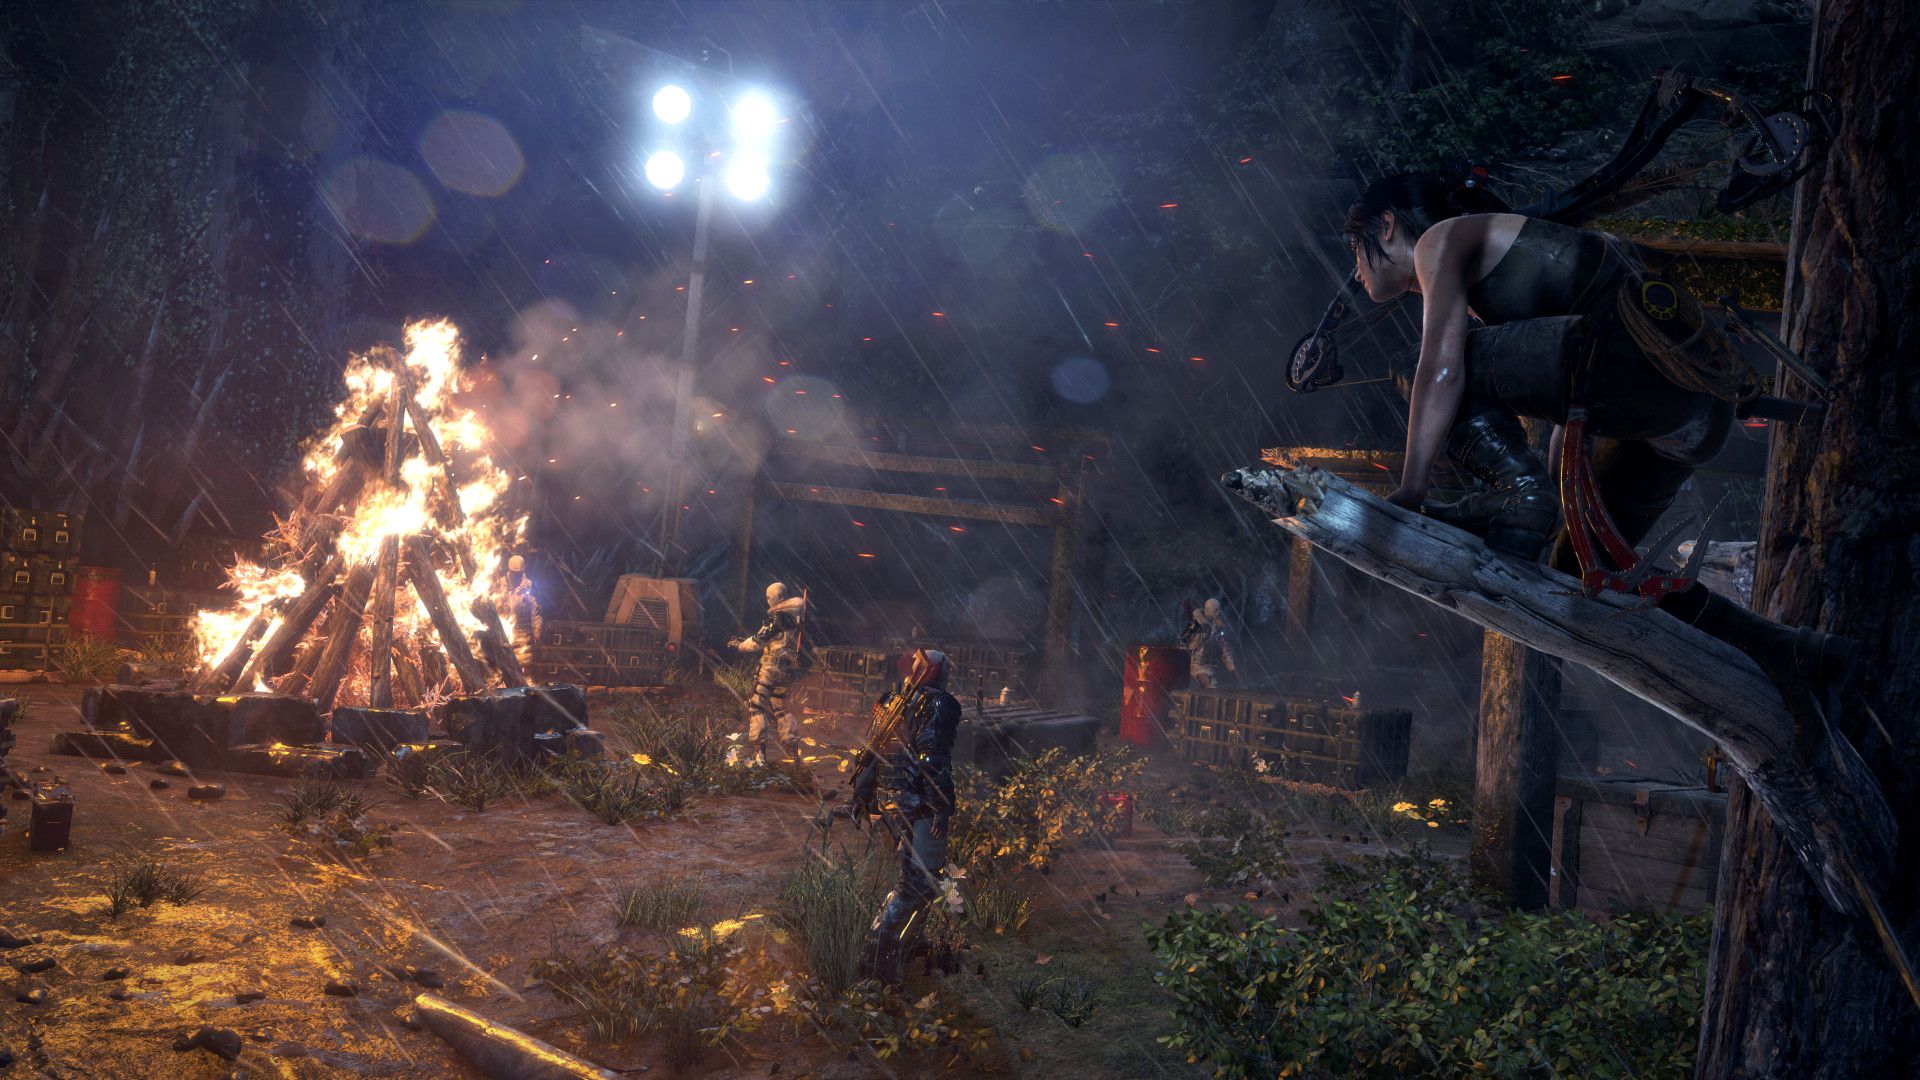 Lara Croft perchée sur une branche d'arbre surplombant un camp ennemi dans Rise of the Tomb Raider.